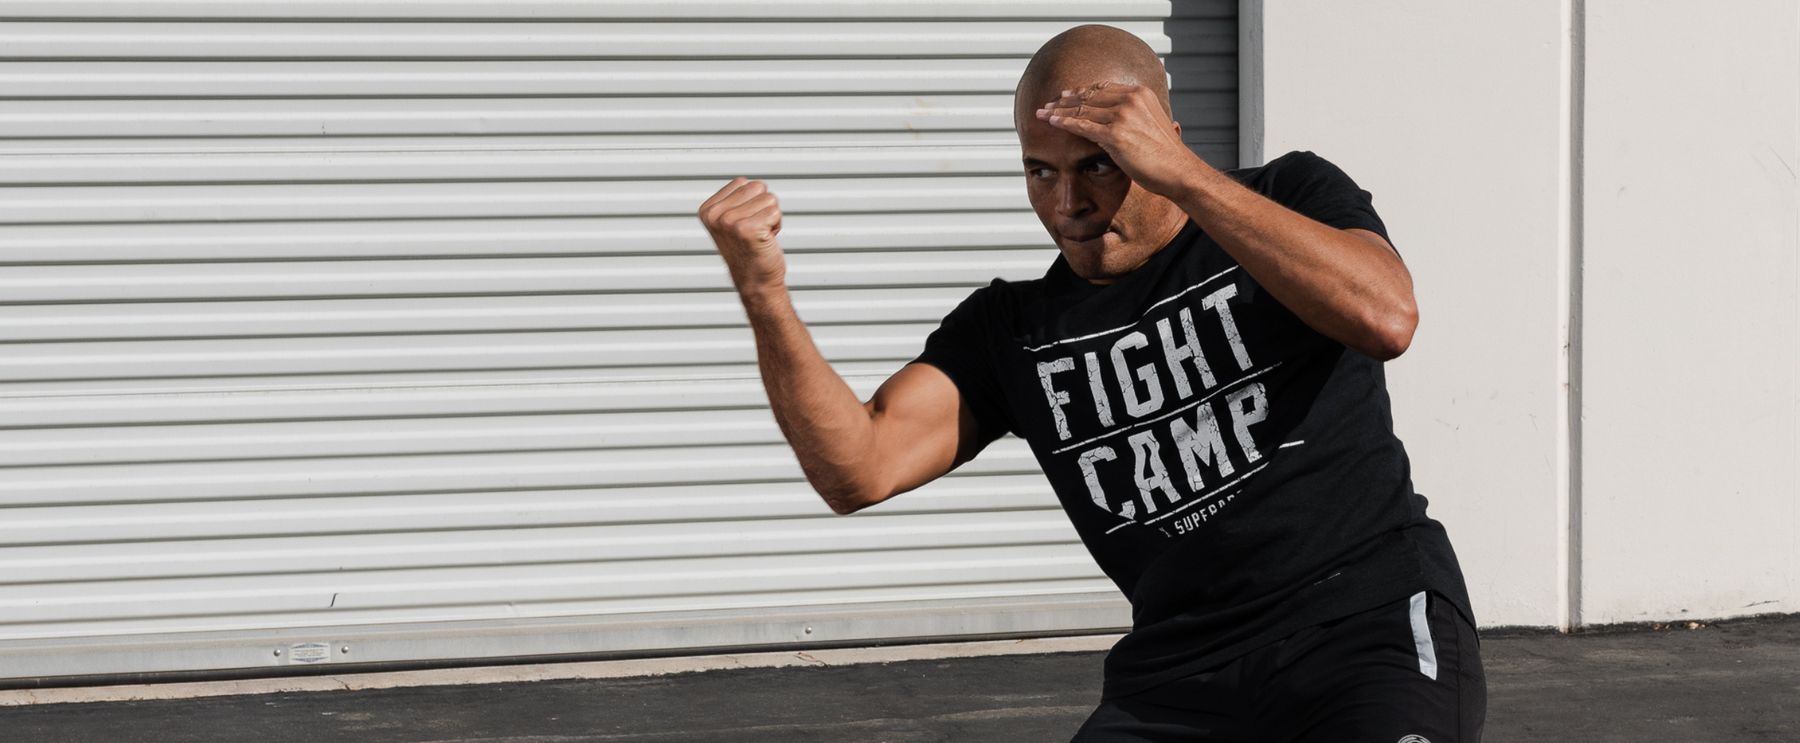 FightCamp - Unique Ways Boxers Build Fight Endurance